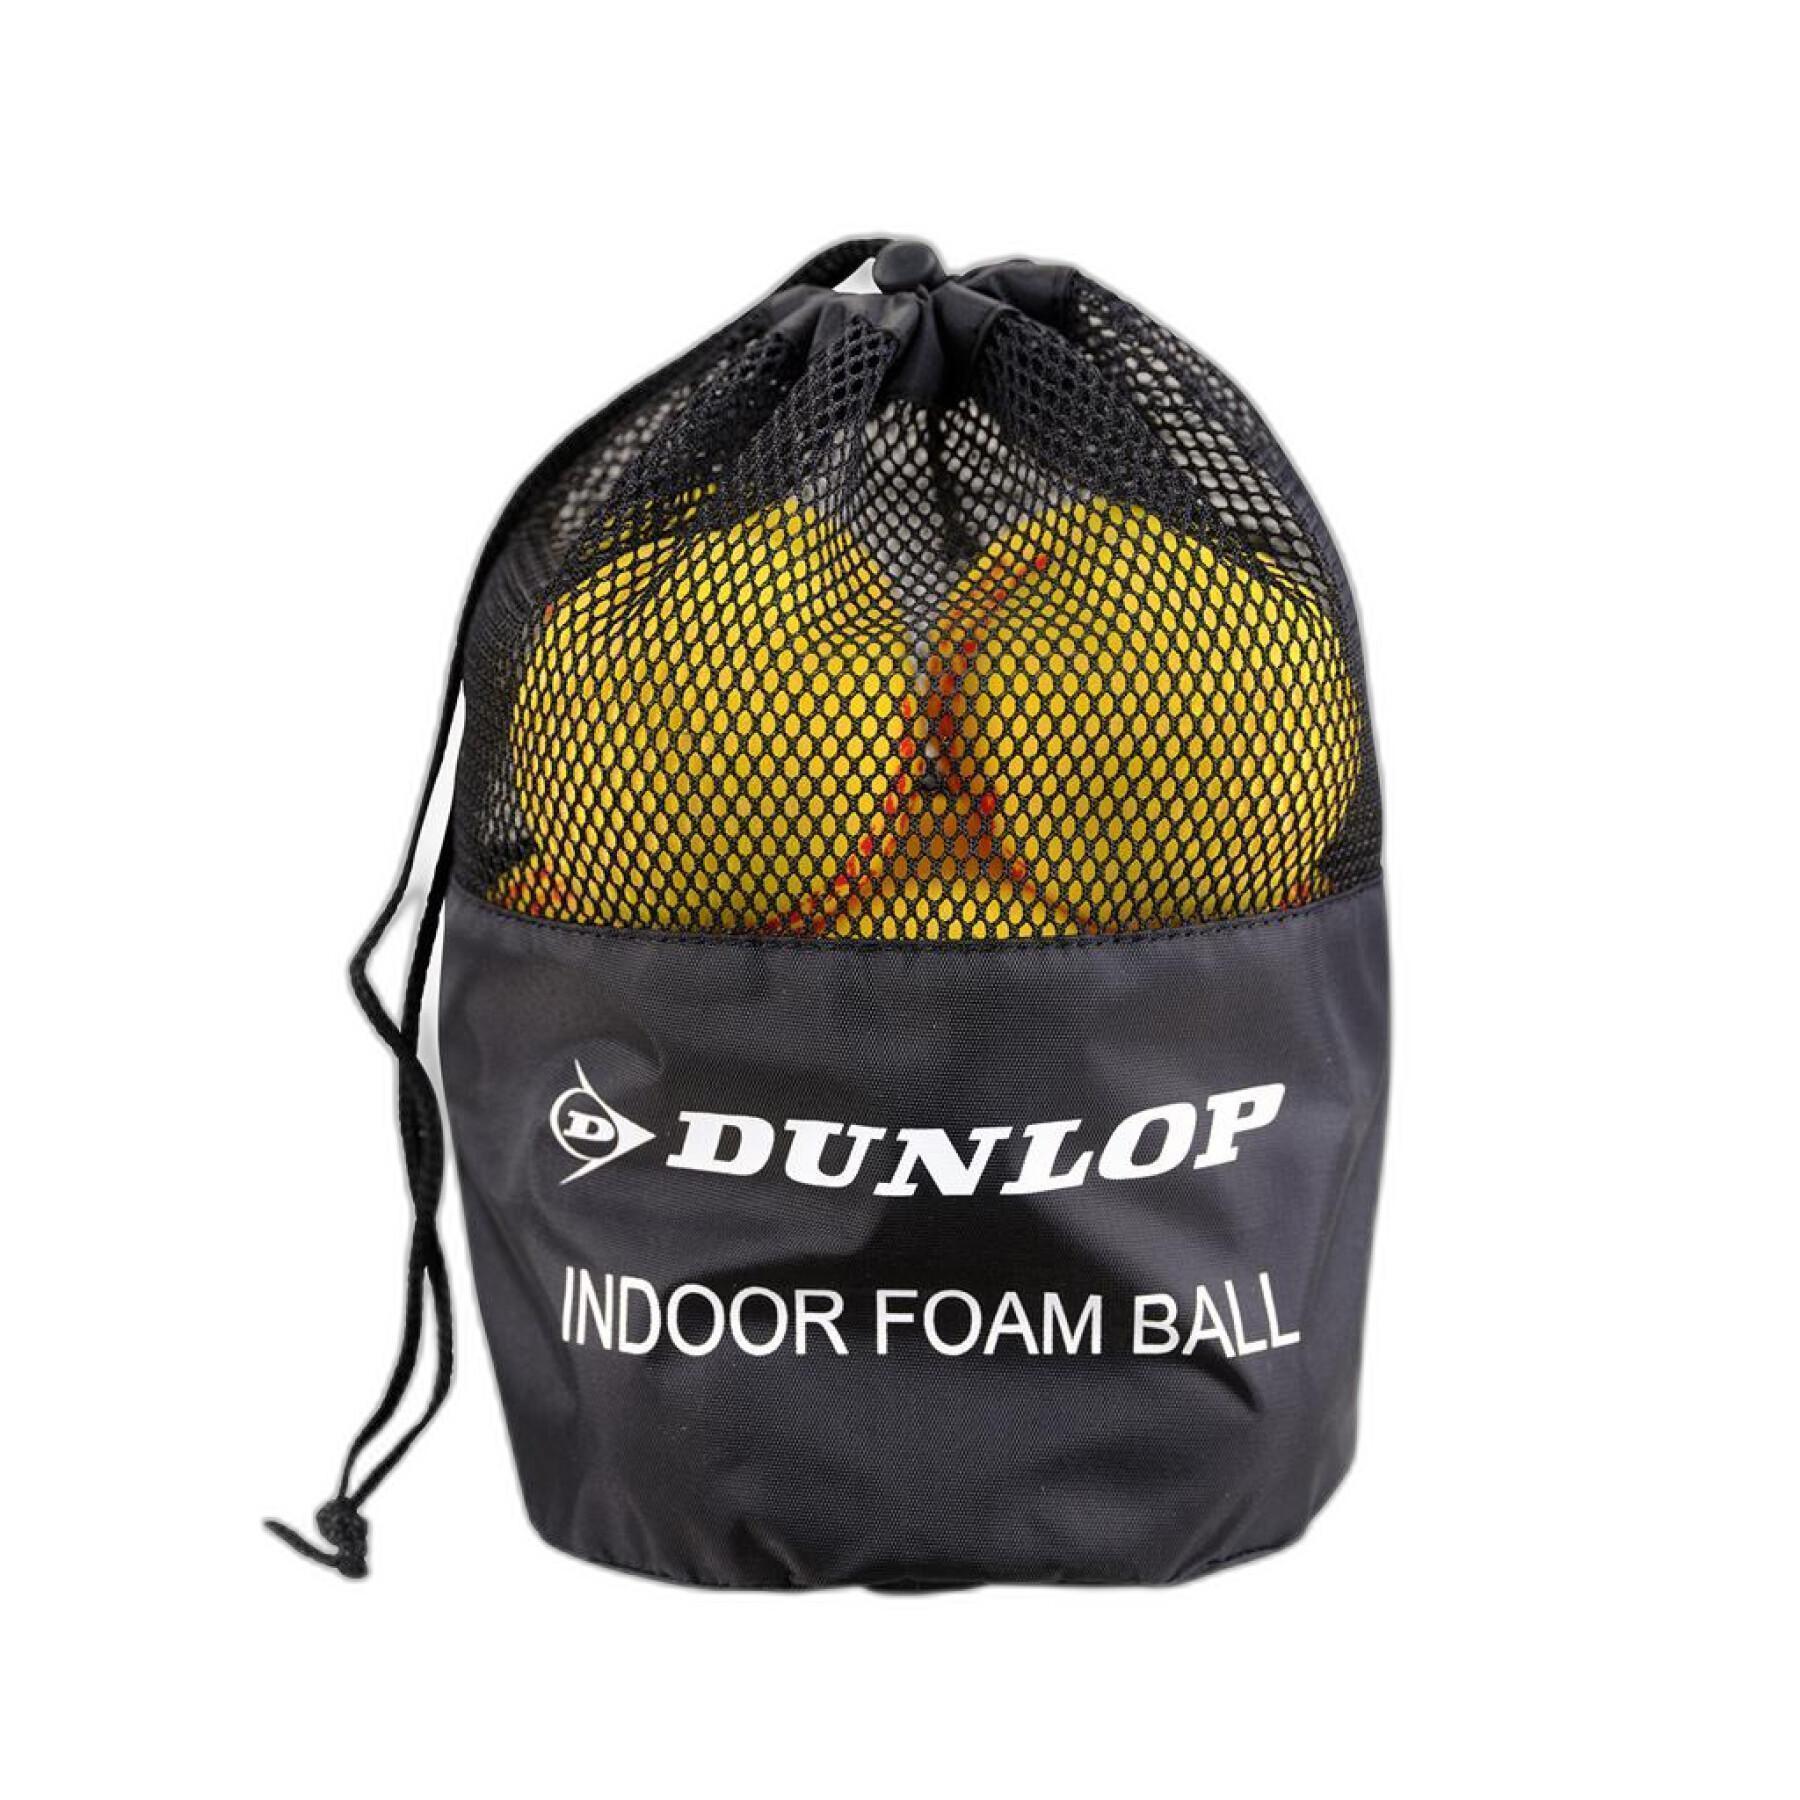 Lot of 12 tennis balls Dunlop Indoor Foam